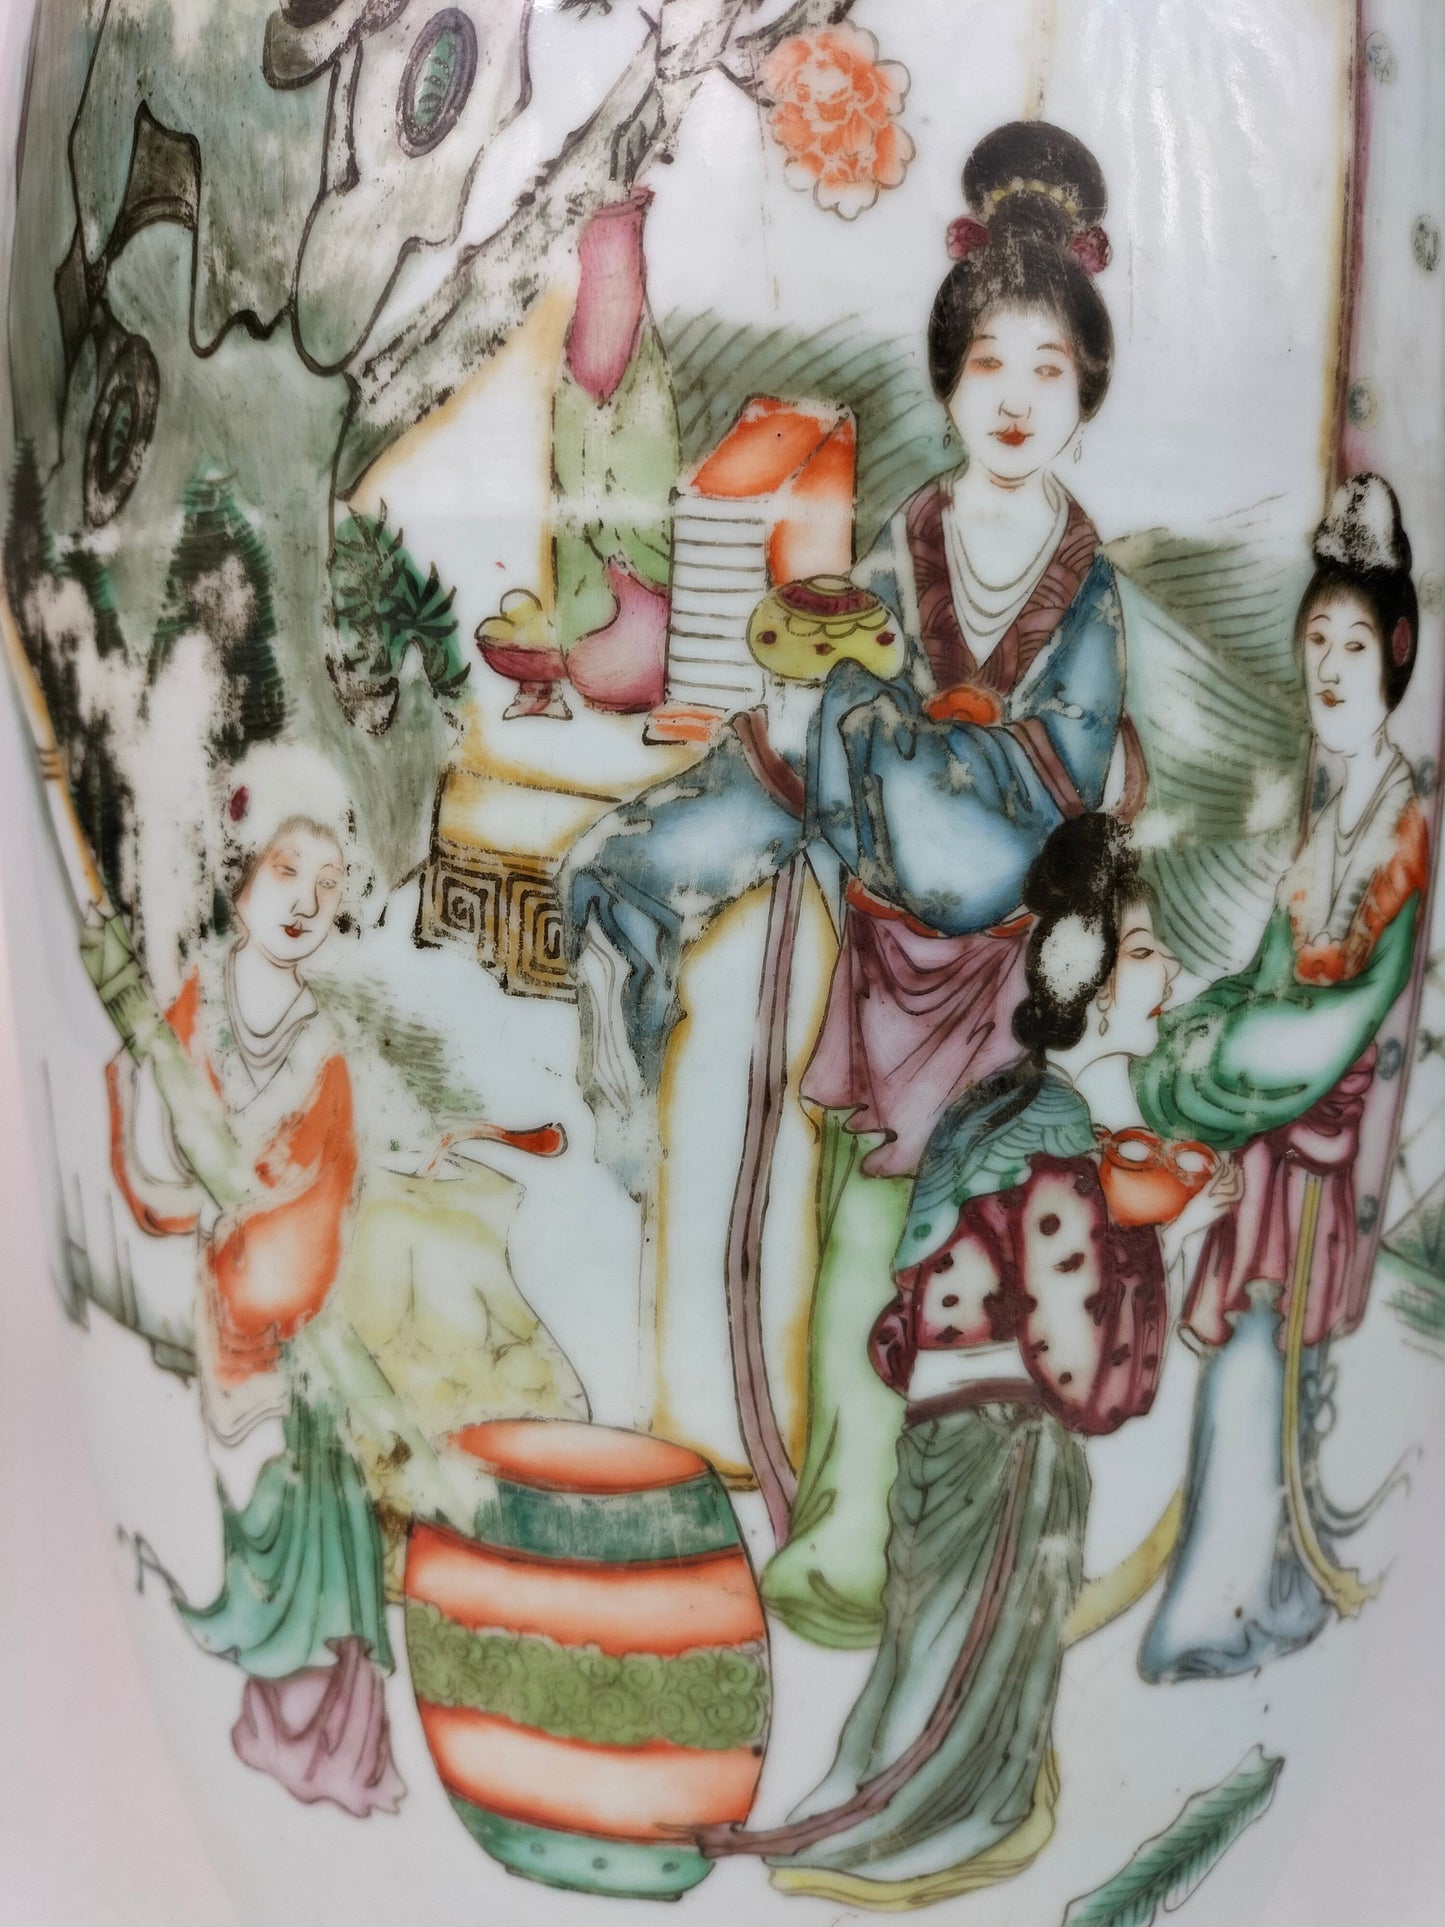 Grande vaso chinês antigo com cena de jardim // Período da República (1912-1949) #2